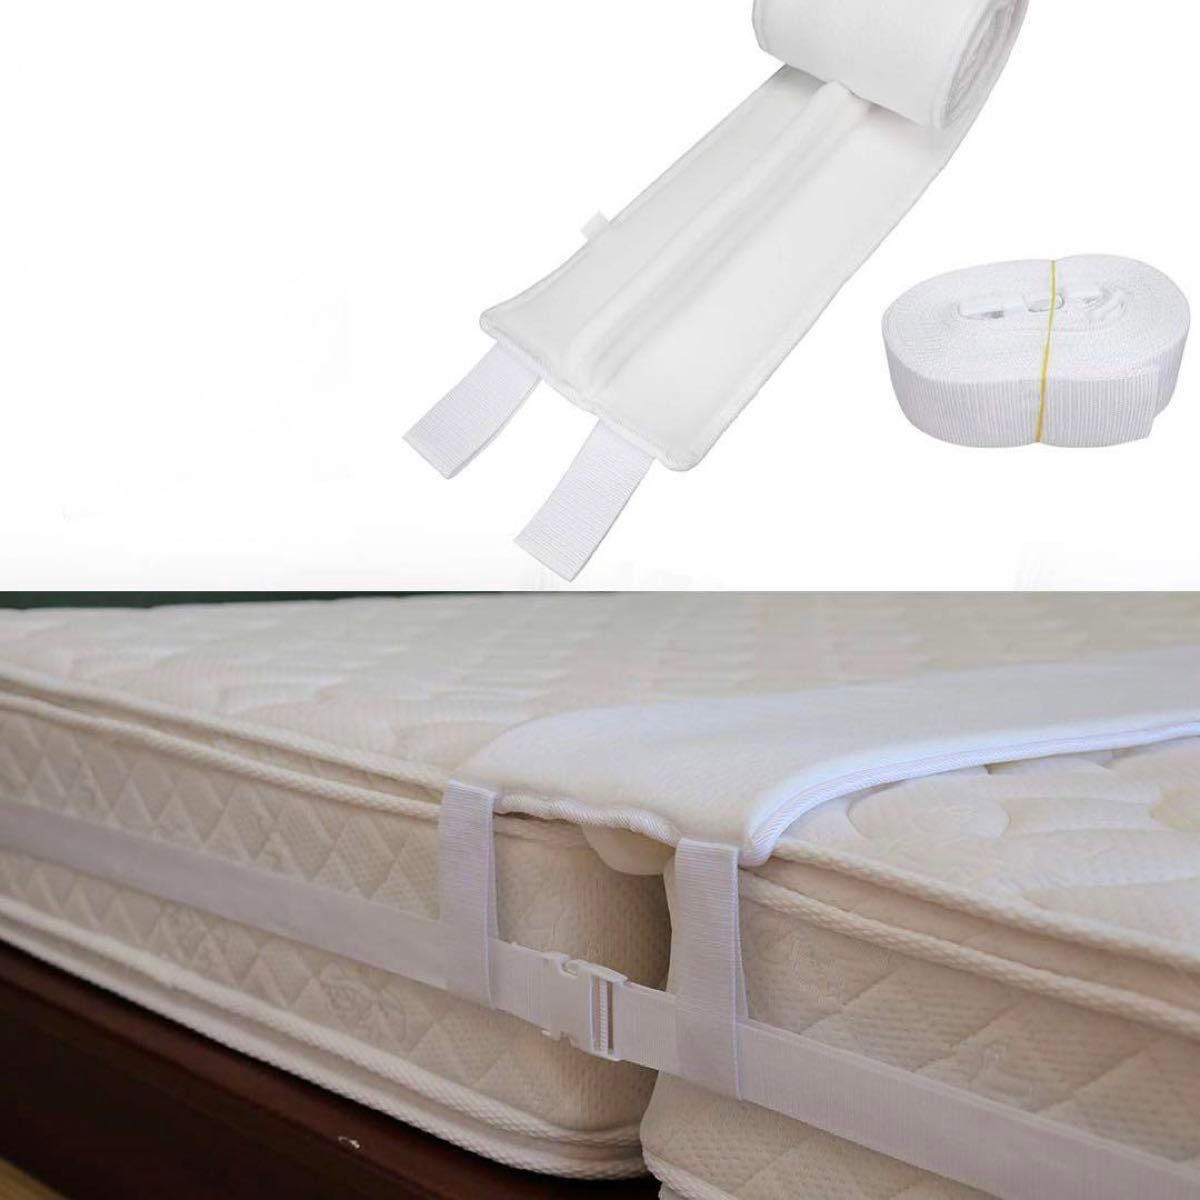 すきまパッド ベッド 固定ベルト 連結ベルト パッド幅30cm 隙間埋め マットレス用 すきまスペーサー すきま防止 ズレ防止